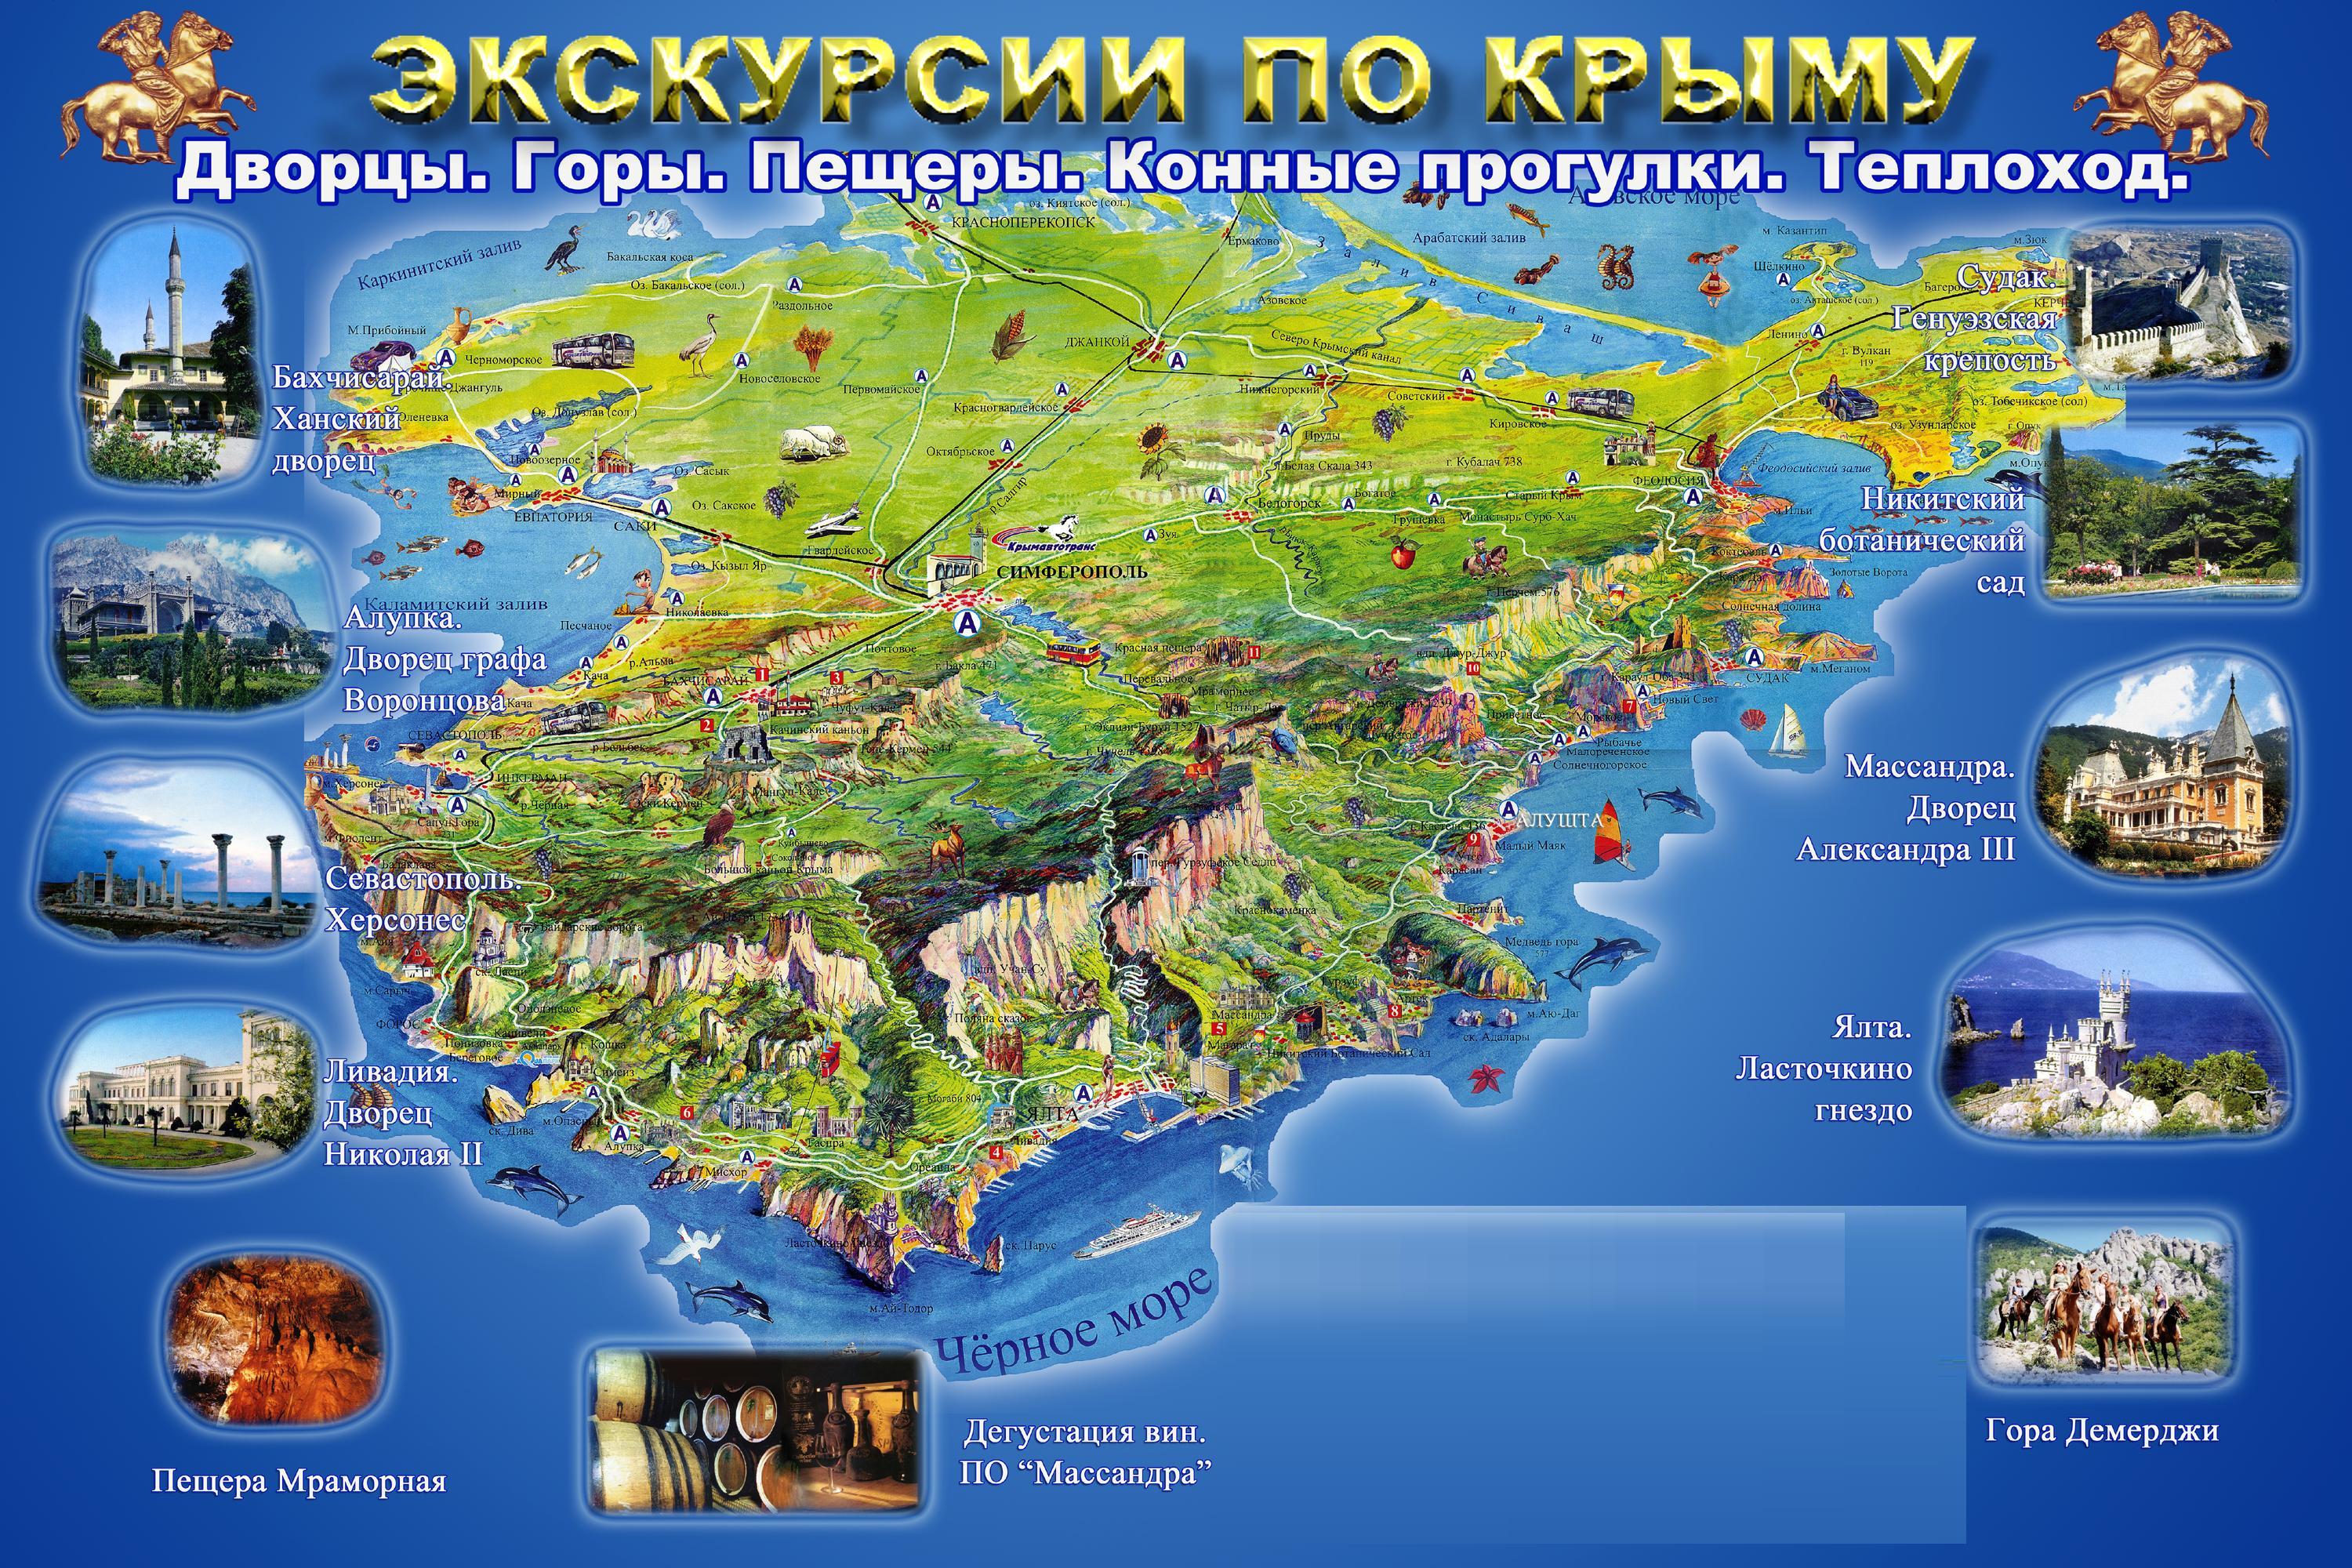 Недорогой отдых в Крыму, экскурсии по Крыму